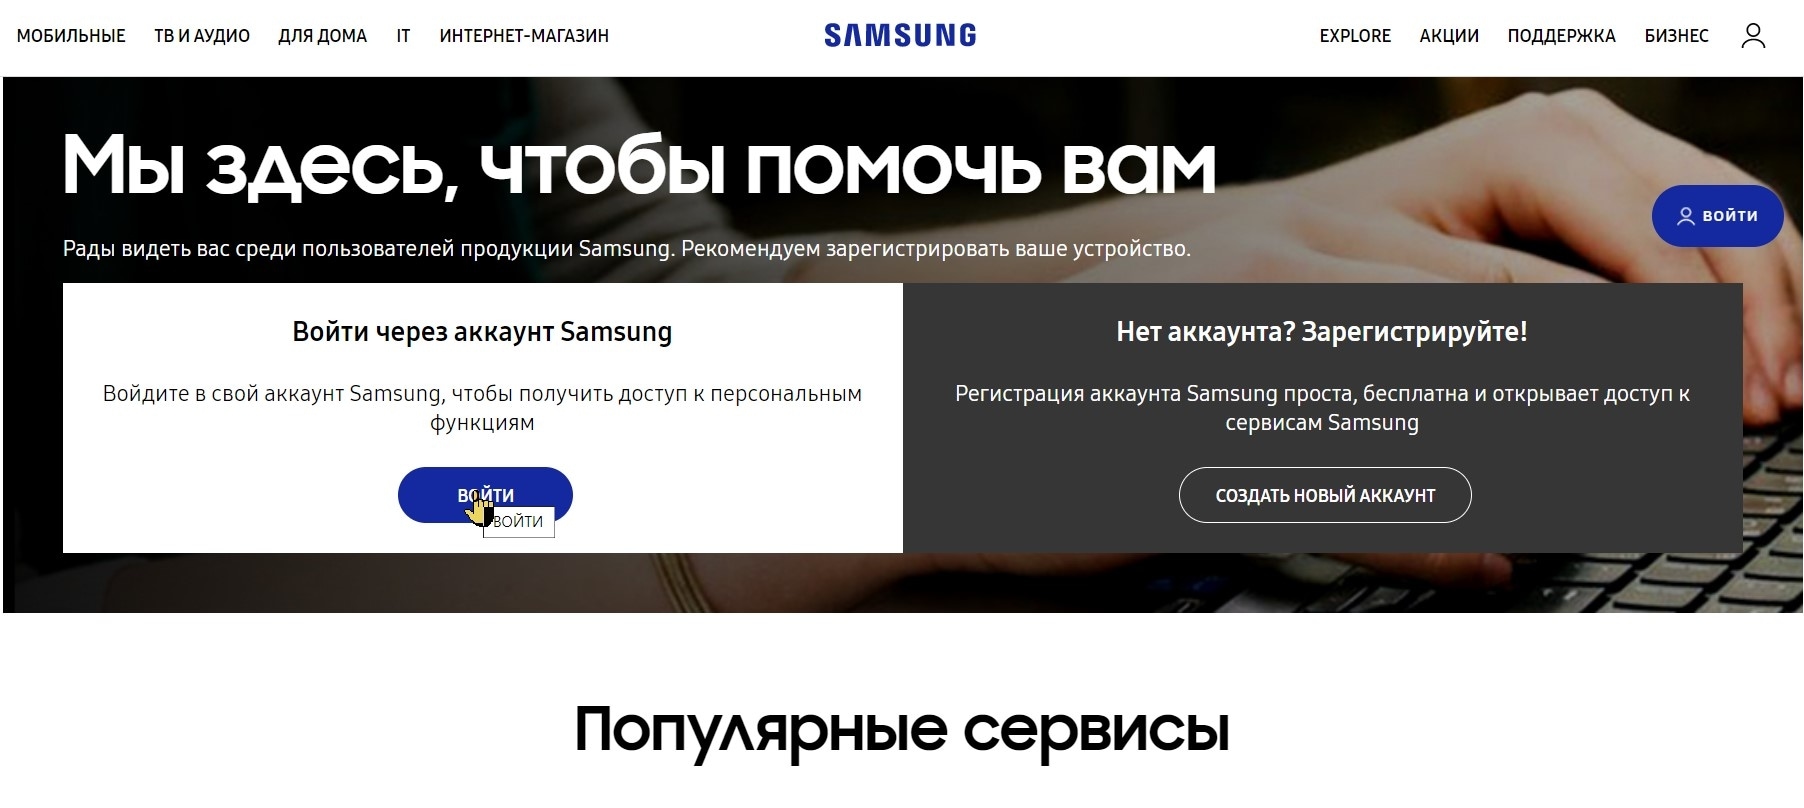 Проверить самсунг на официальном сайте. Выездной сервис Samsung. Samsung техподдержка. Служба поддержки самсунг номер телефона.